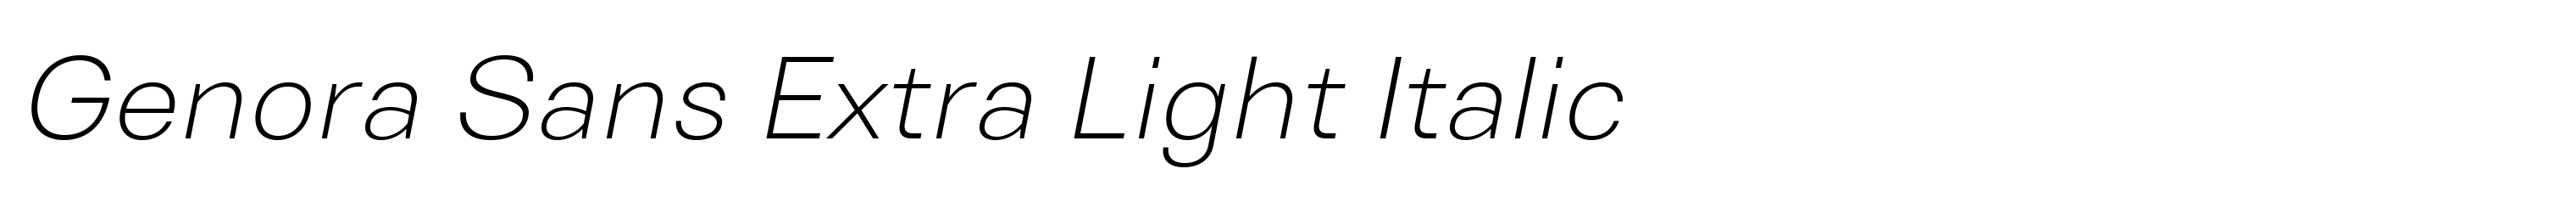 Genora Sans Extra Light Italic